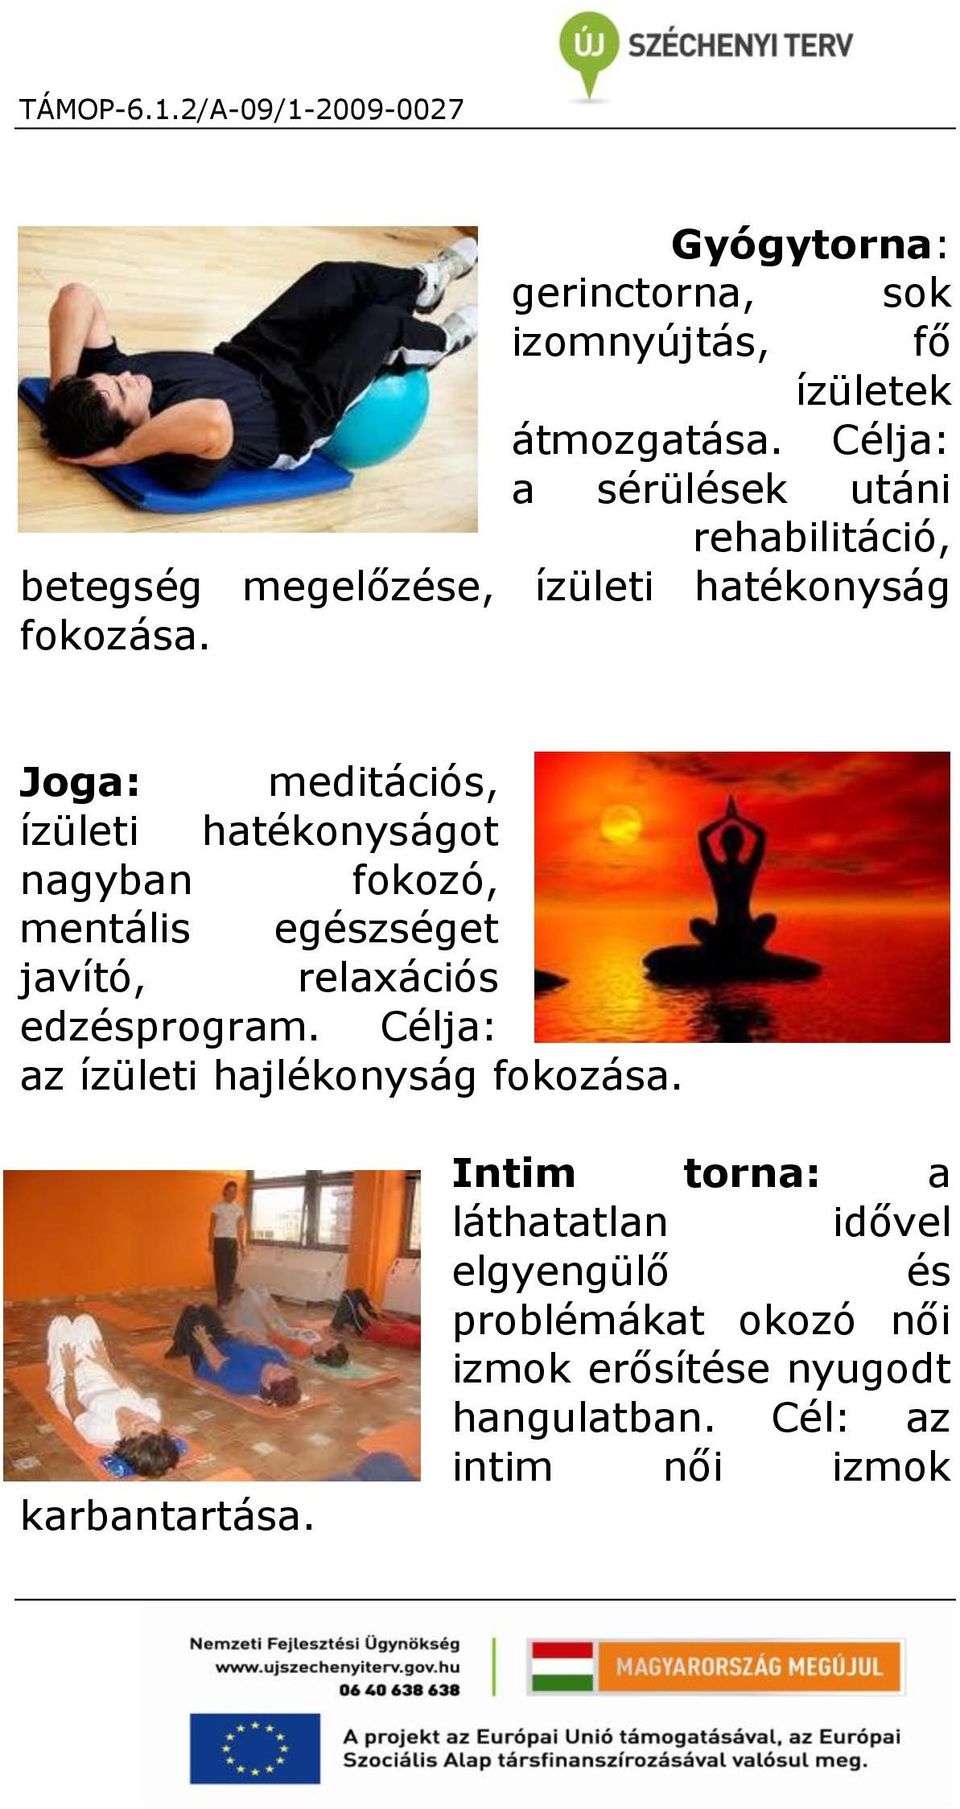 Joga: meditációs, ízületi hatékonyságot nagyban fokozó, mentális egészséget javító, relaxációs edzésprogram.